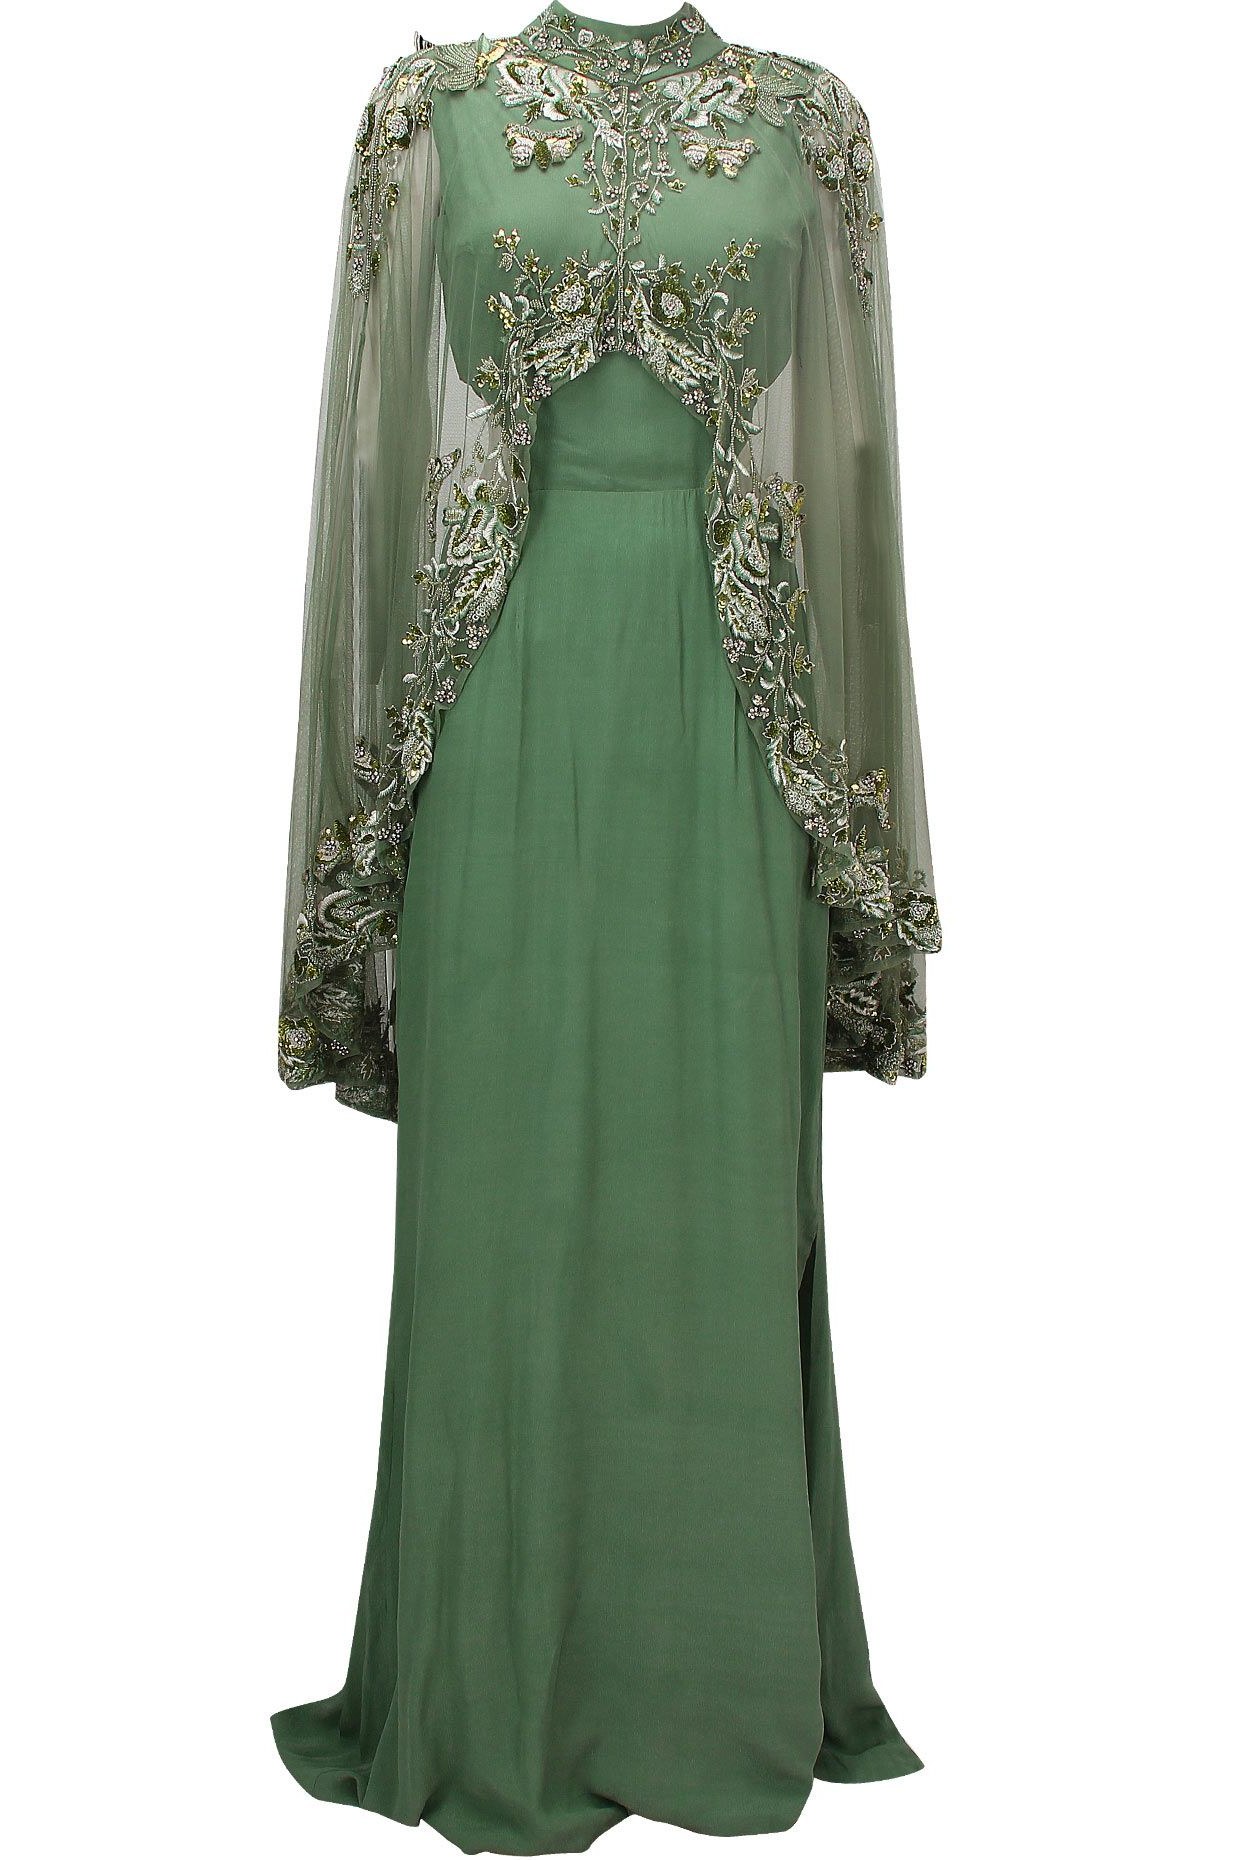 Bentuk Gamis Batik Seragam Pernikahan Fmdf Green Cutout Goddess Gown with Embroidered High Low Sheer